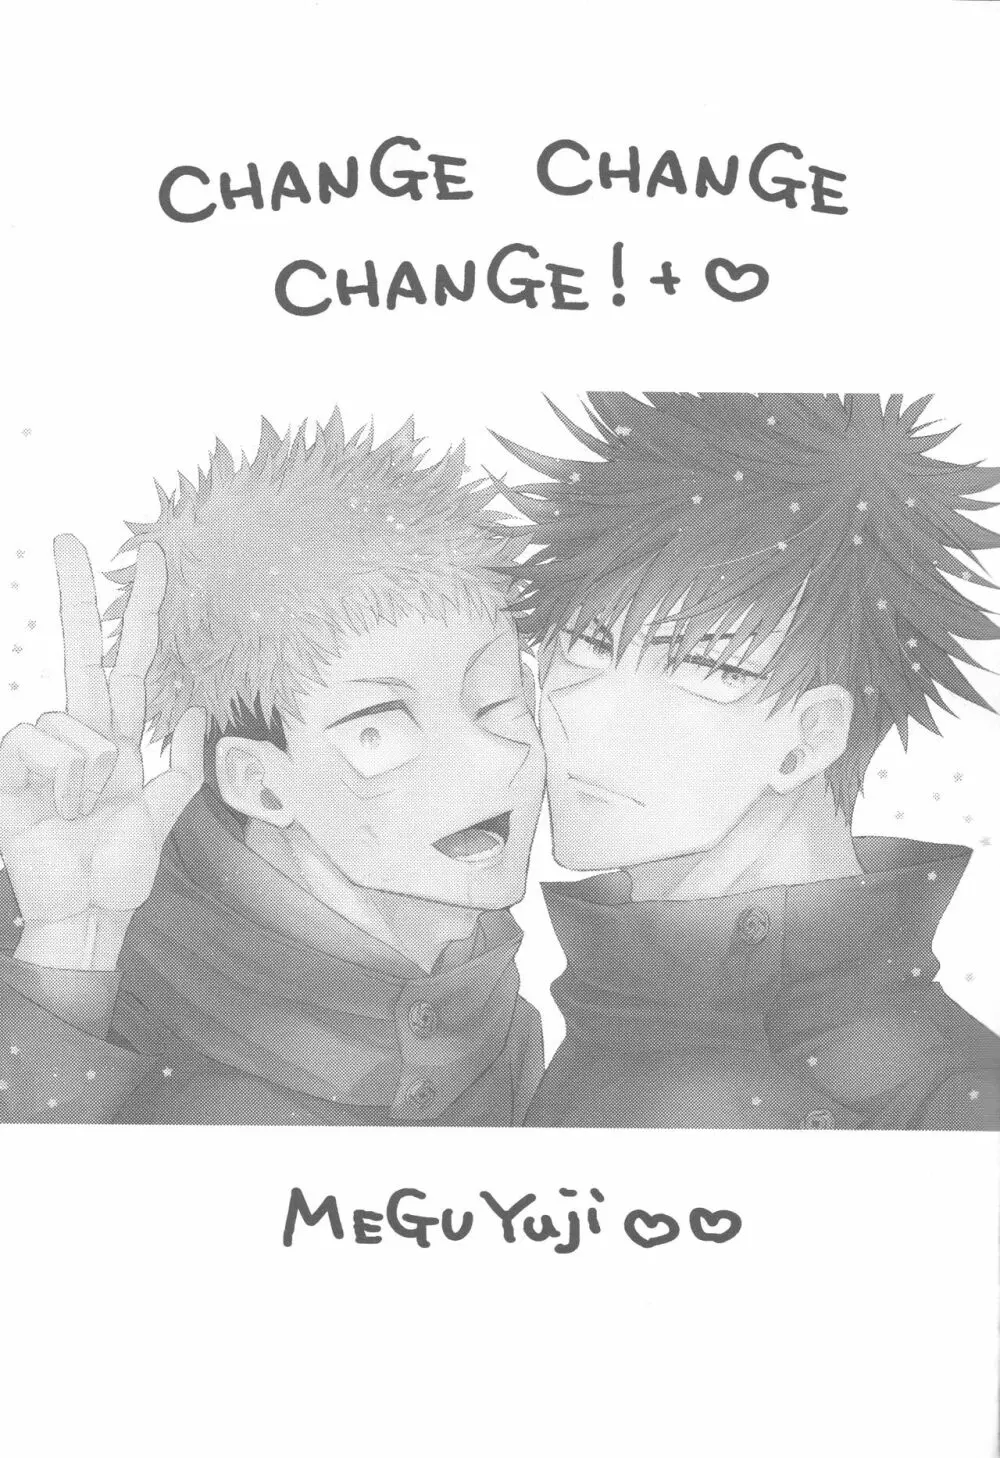 CHANGE CHANGE CHANGE + ♥ - page2